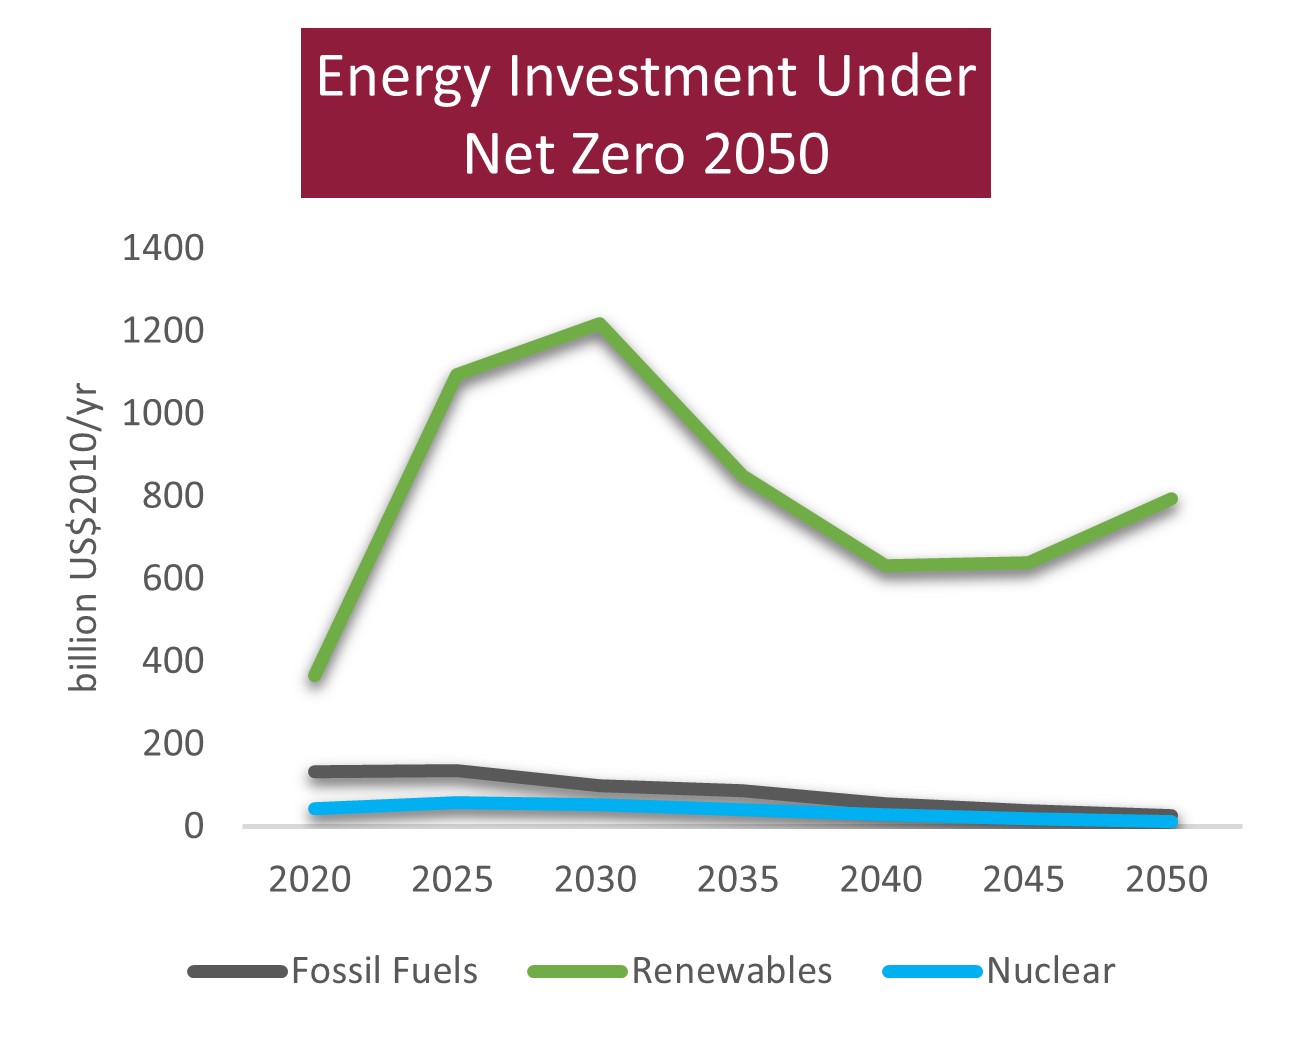 Energy investment under Net Zero 2050